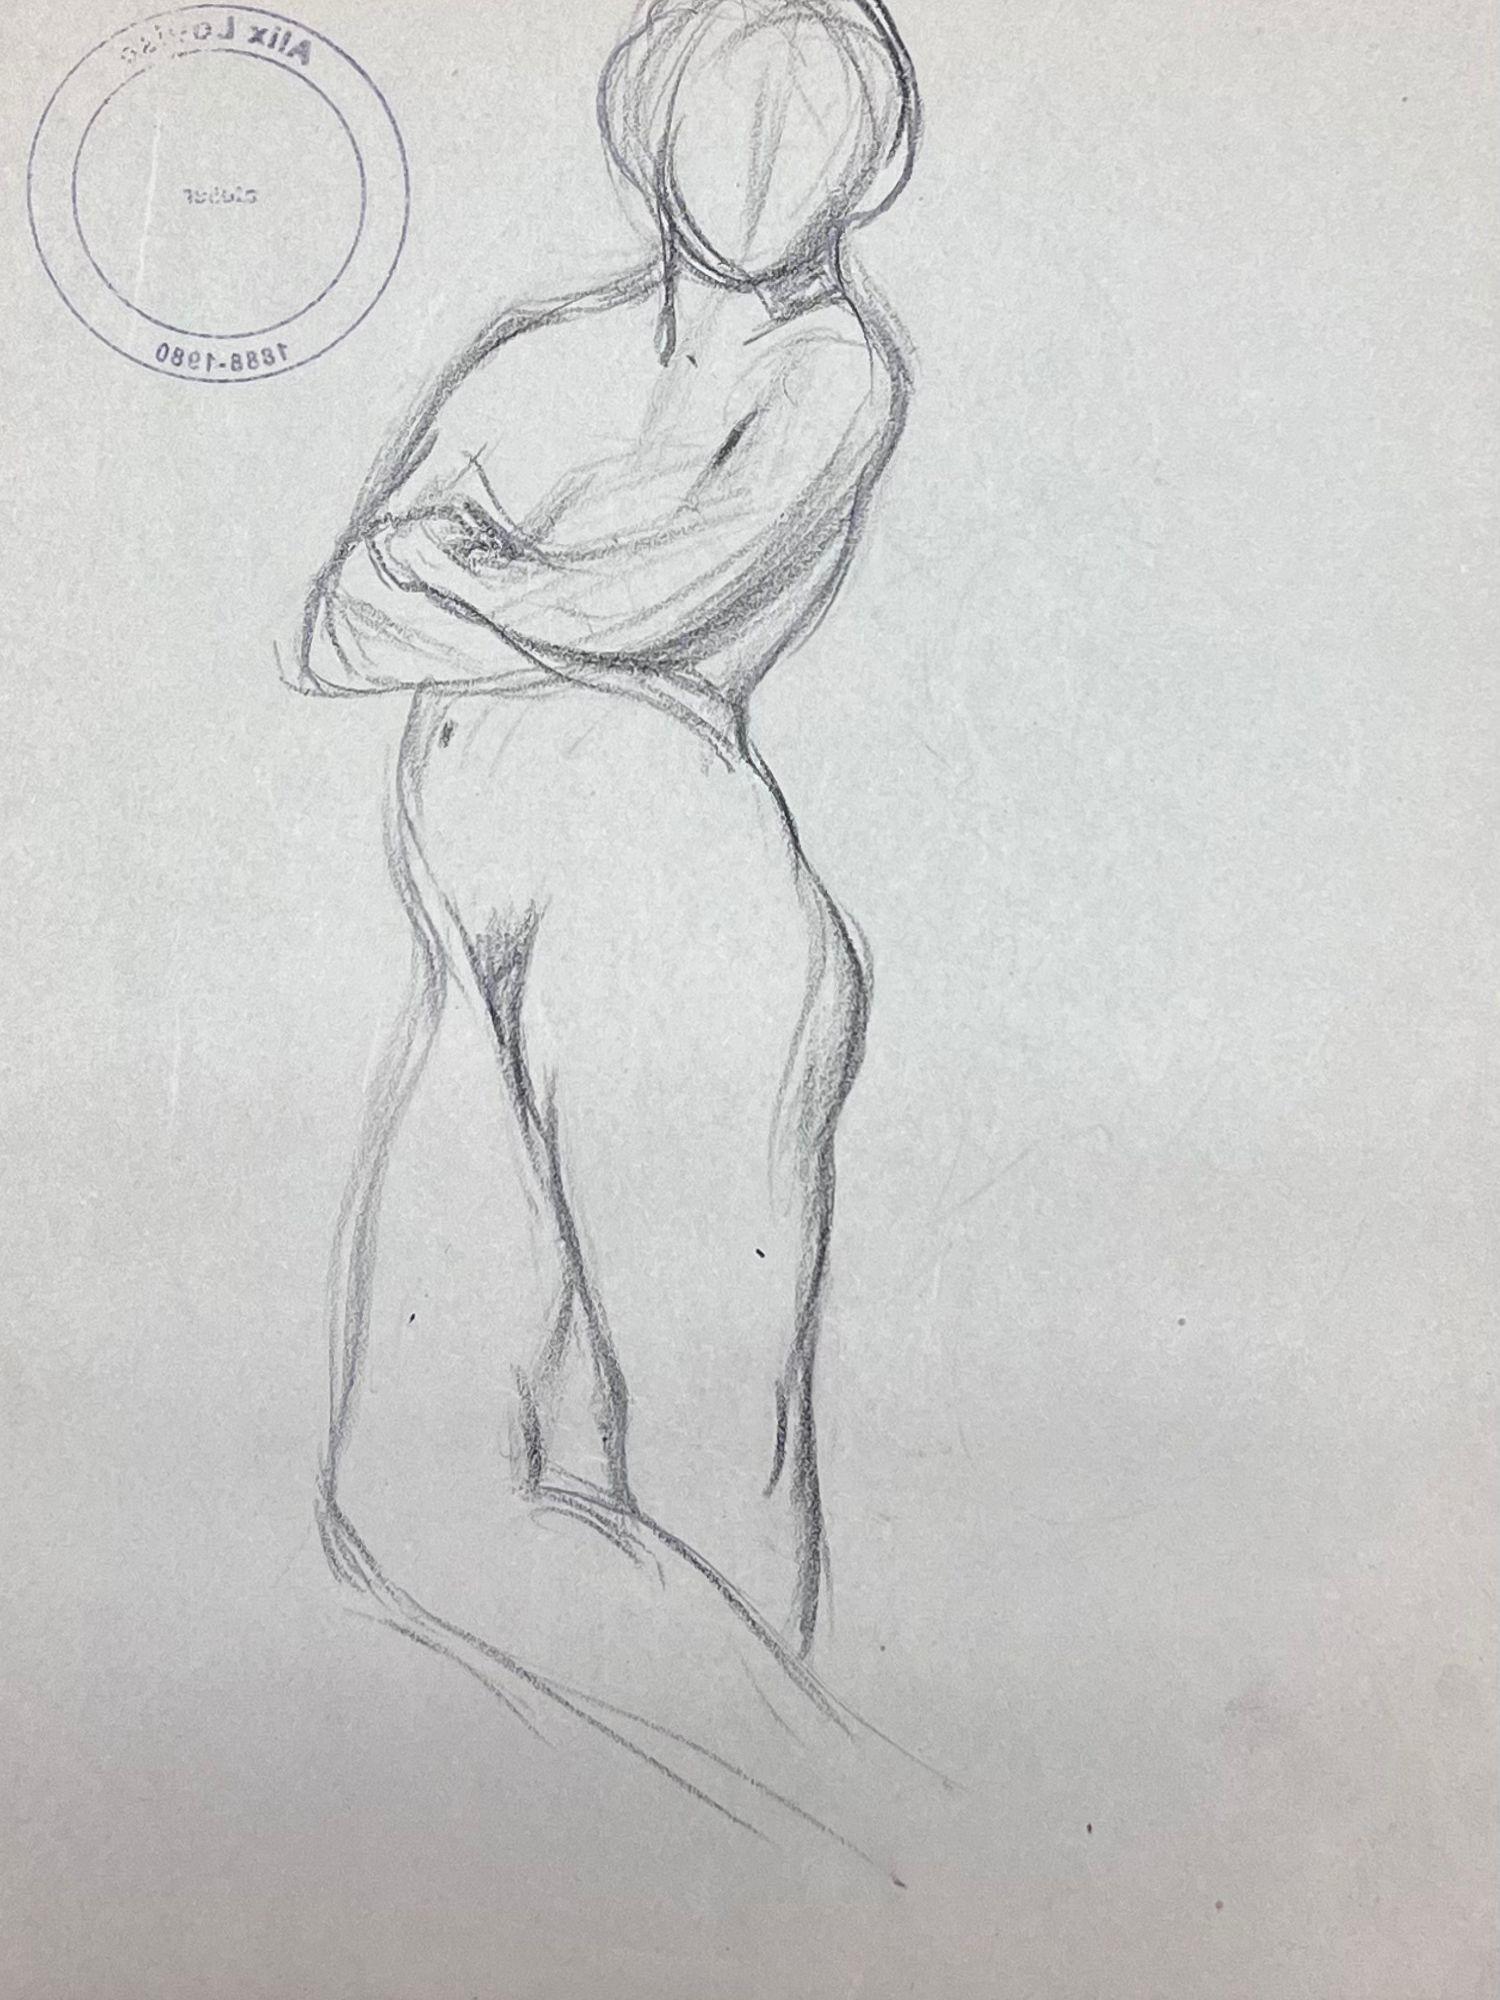 Croquis impressionniste français d'une figure féminine nue peinte au crayon - Painting de Louise Alix